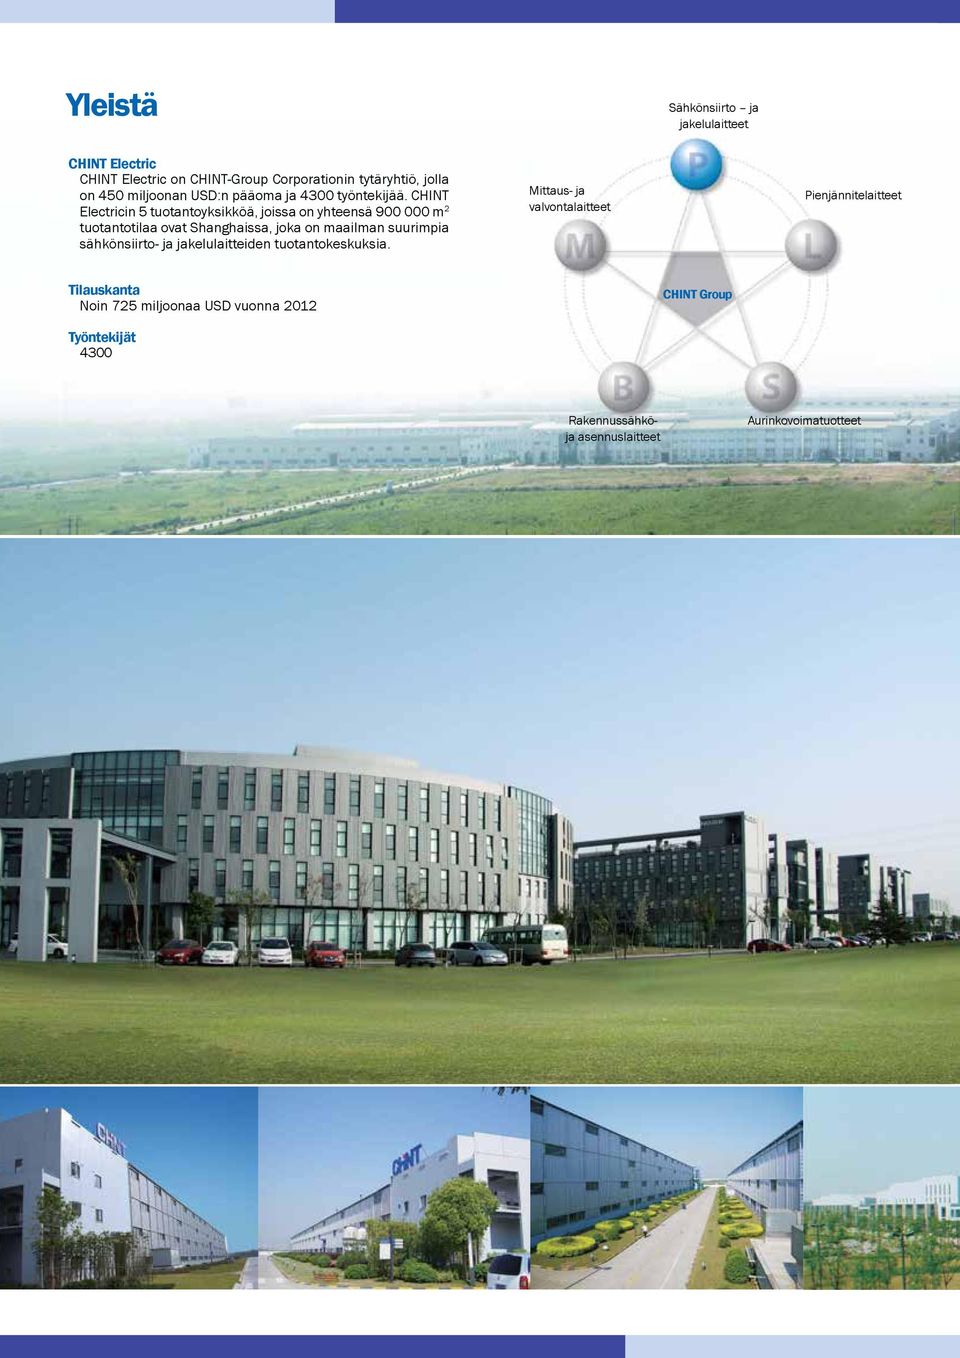 CHINT Electricin 5 tuotantoyksikköä, joissa on yhteensä 900 000 m 2 tuotantotilaa ovat Shanghaissa, joka on maailman suurimpia